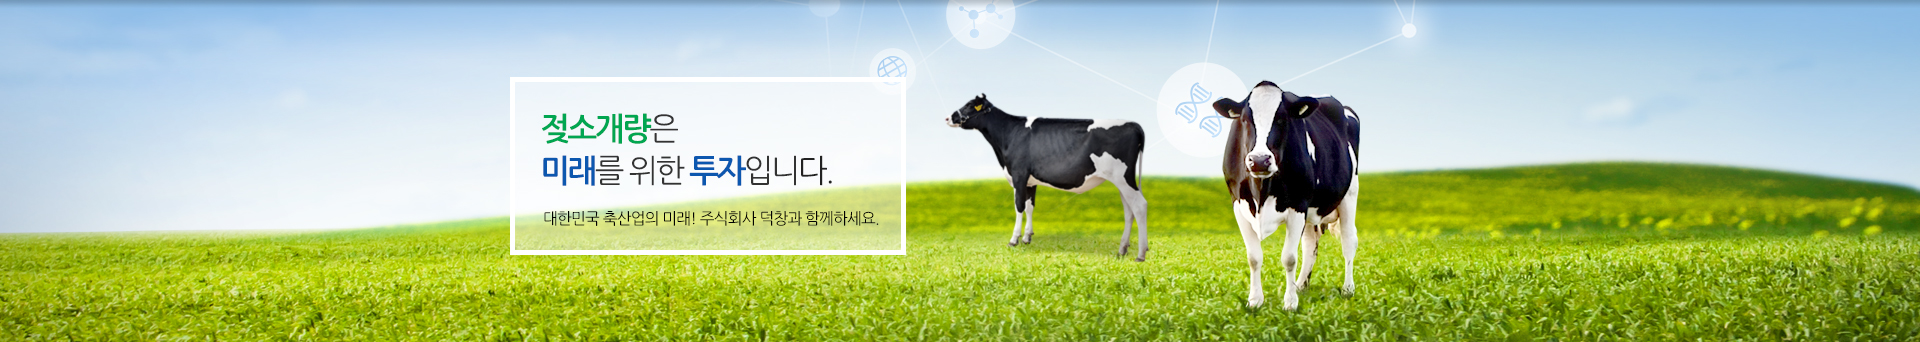 젖소개량은 미래를 위한 투자입니다. 대한민국 축산업의 미래! 주식회사 덕창과 함께하세요.